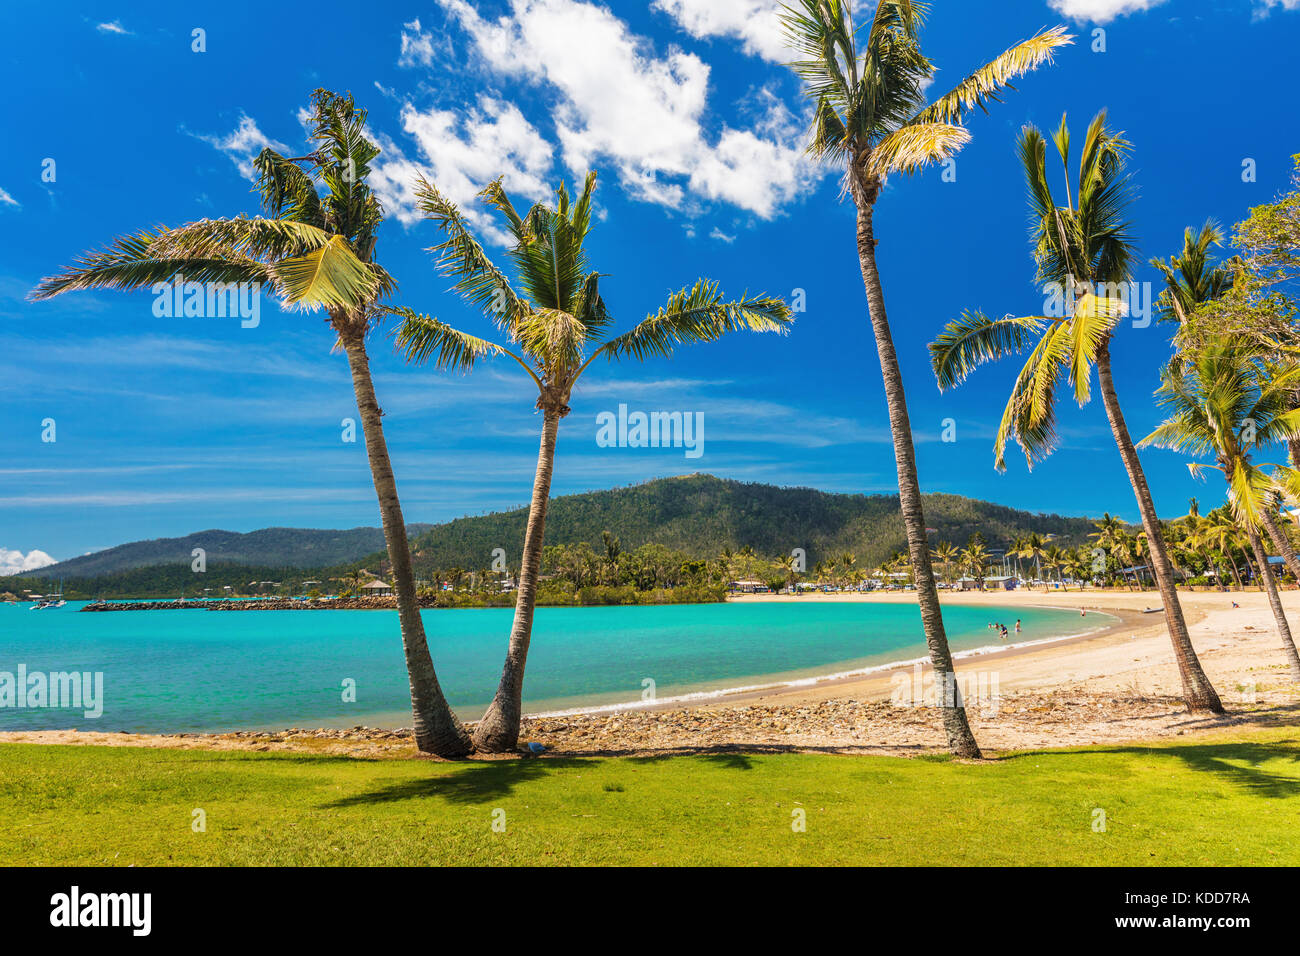 Journée ensoleillée sur la plage de sable avec des palmiers, Airlie Beach, Whitsundays, Queensland Australie Banque D'Images